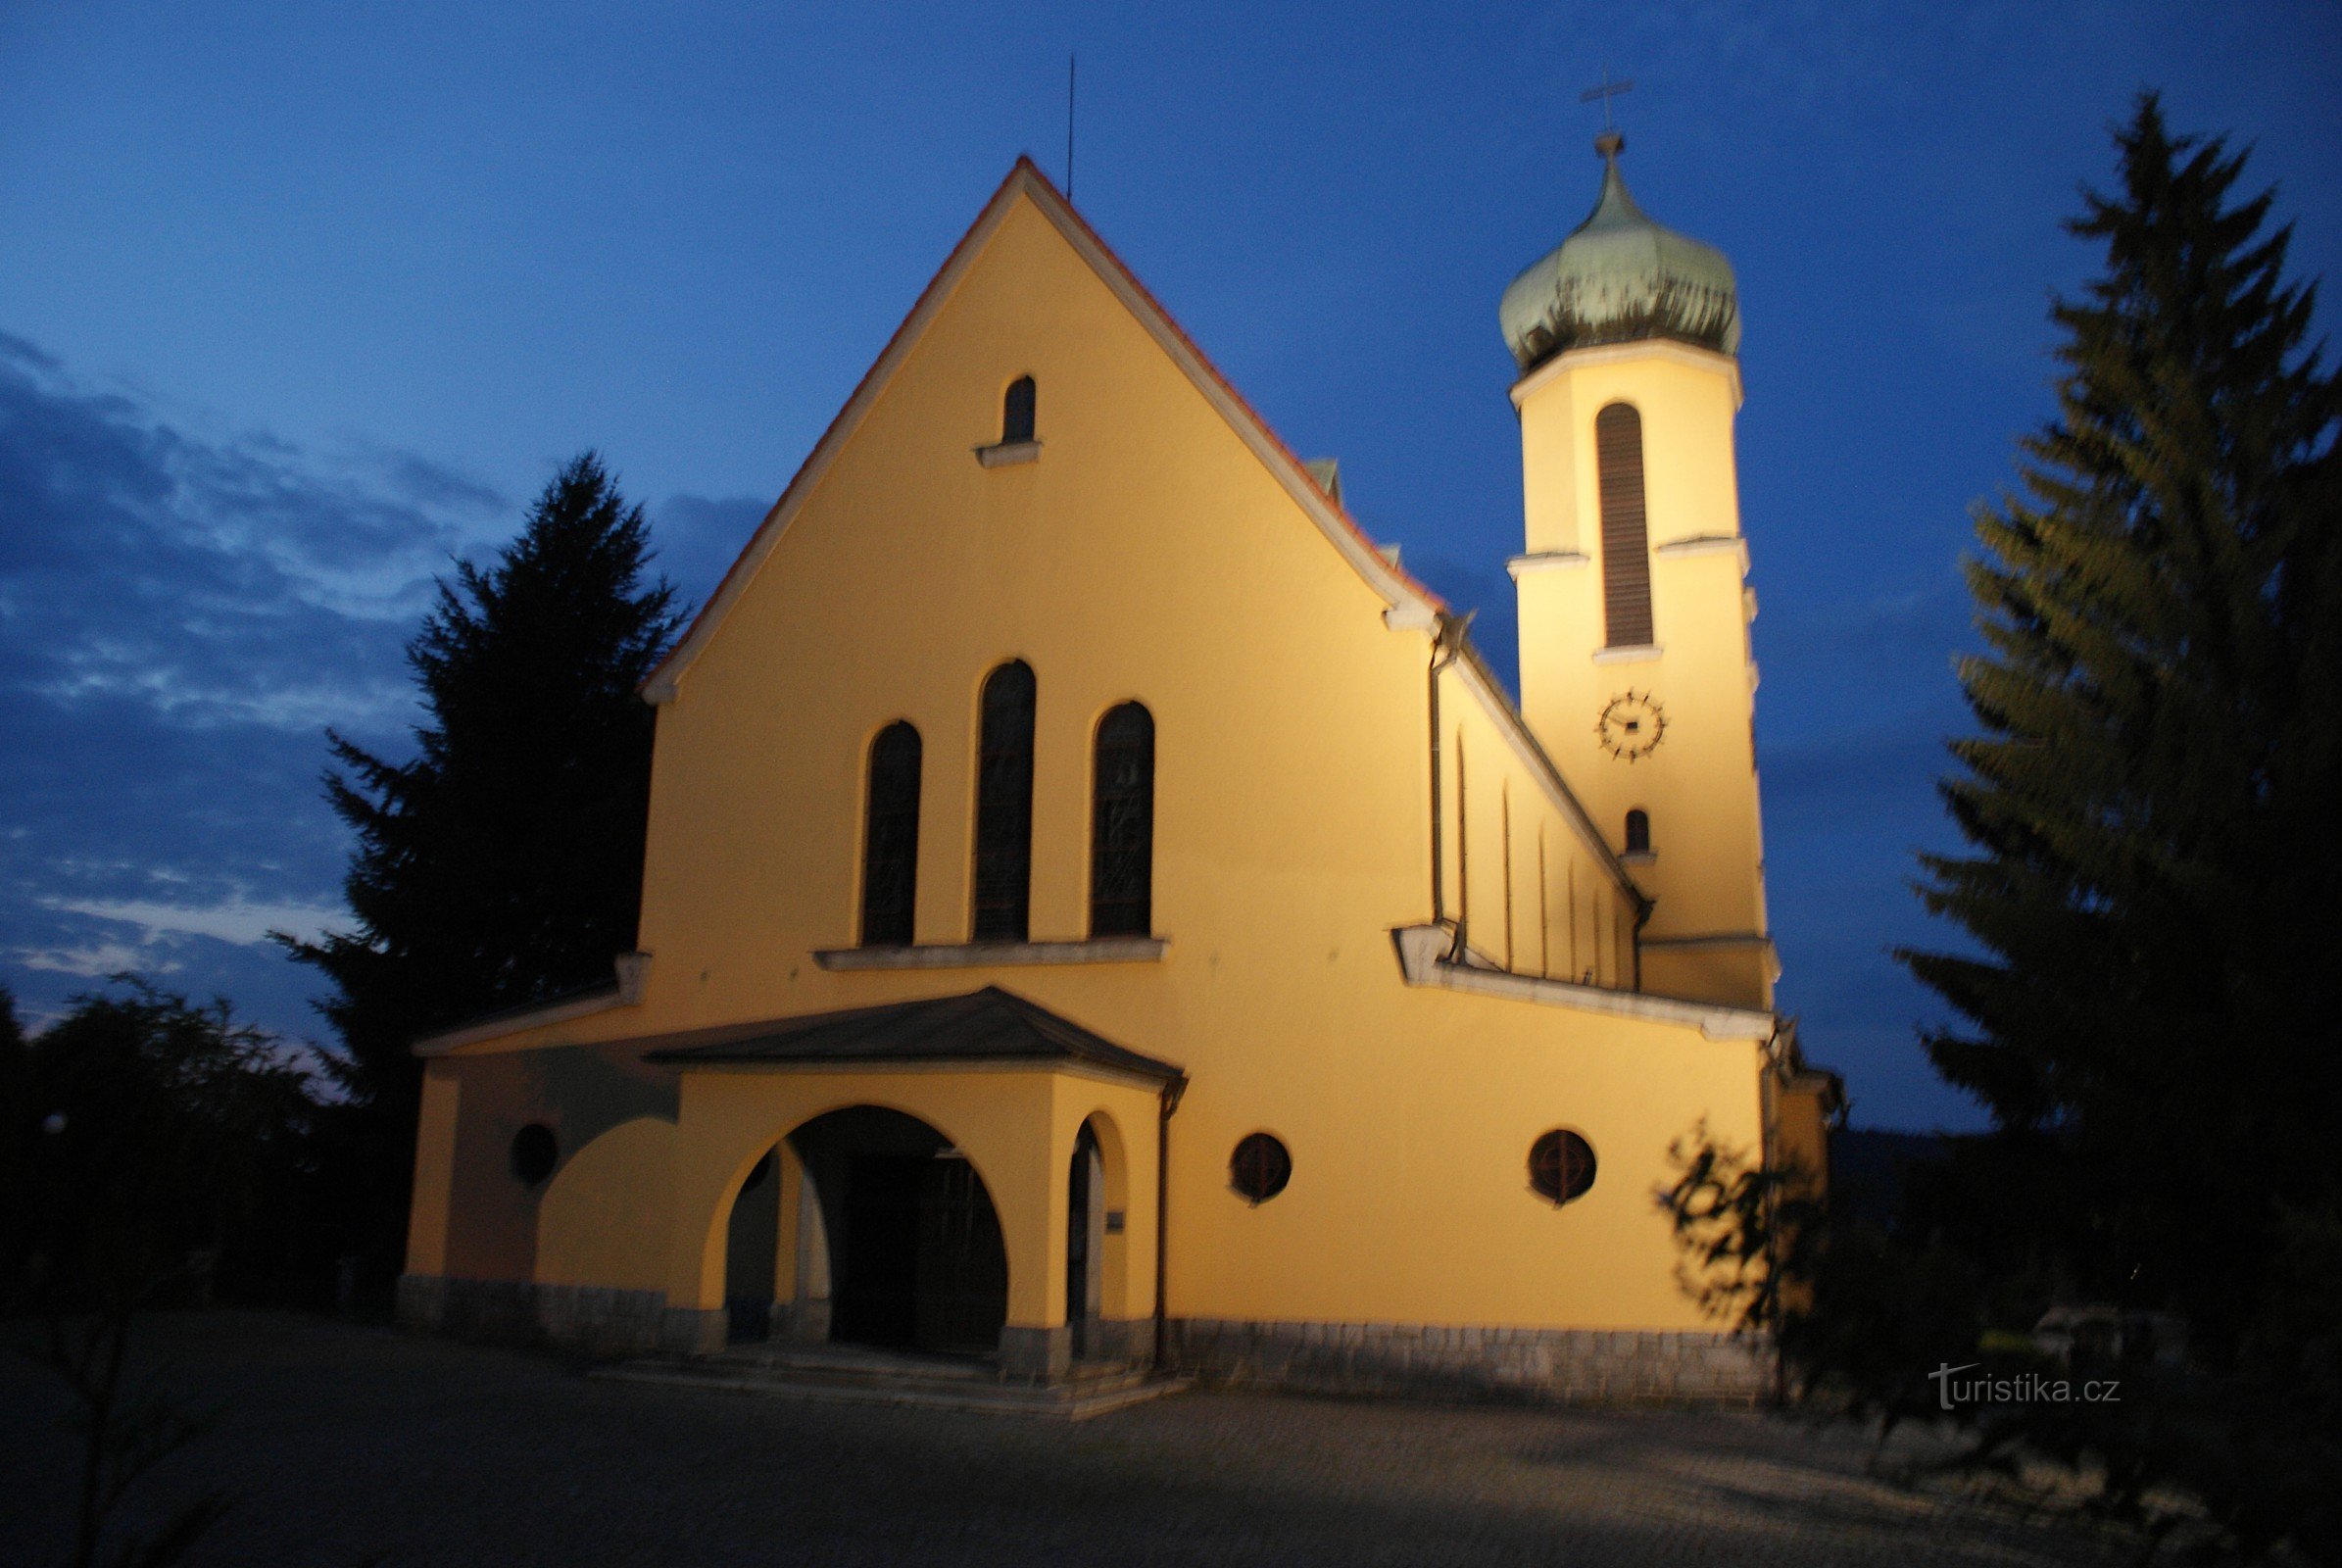 Vétrní - cerkev sv. Jan Nepomucký